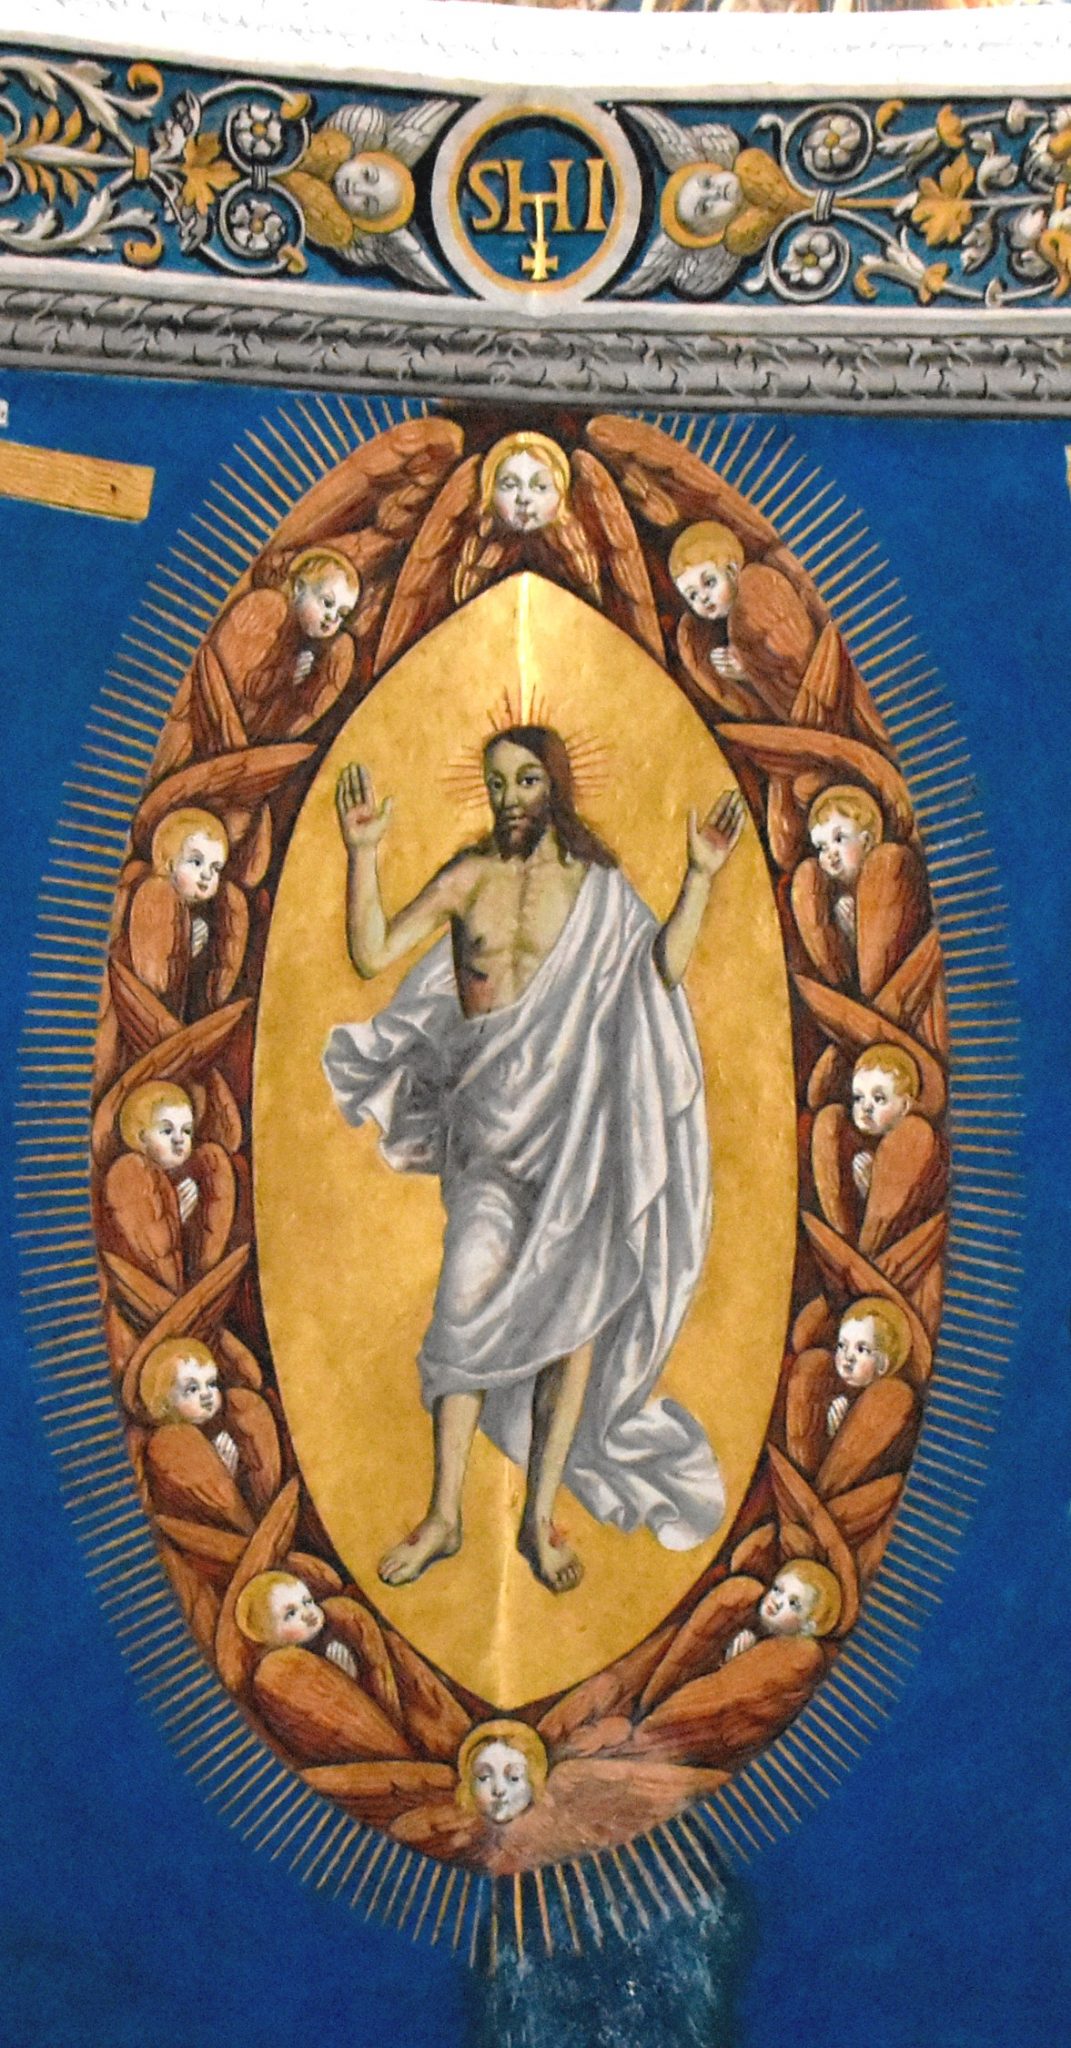 Fresque représentant Jésus ressuscité, Cathédrale Sainte-Cécile